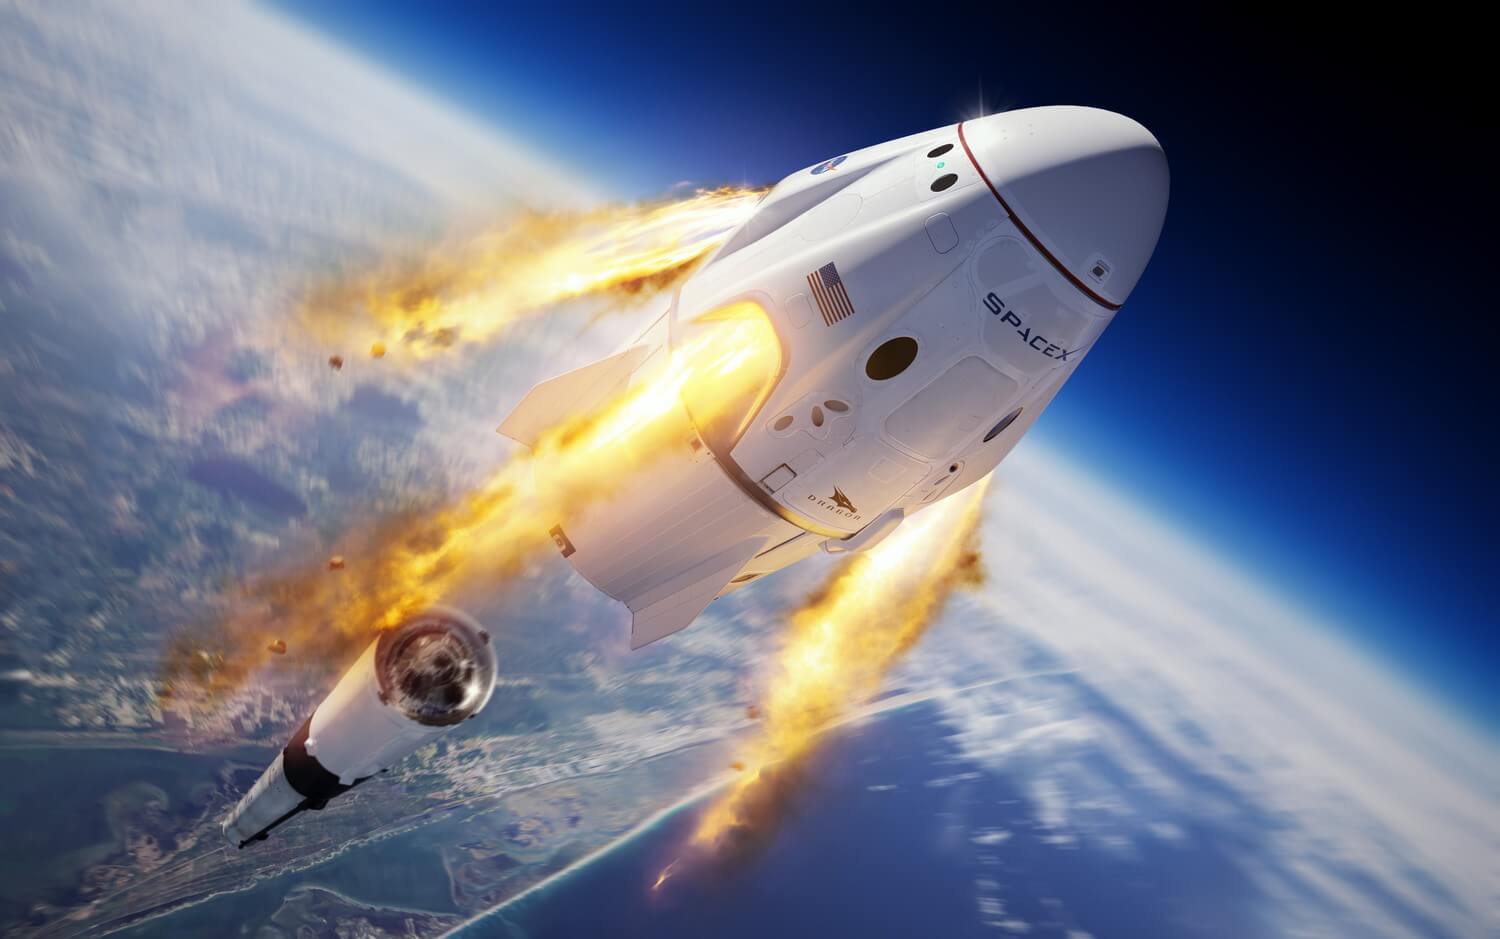 #vídeo | SpaceX hizo estallar el cohete durante las pruebas